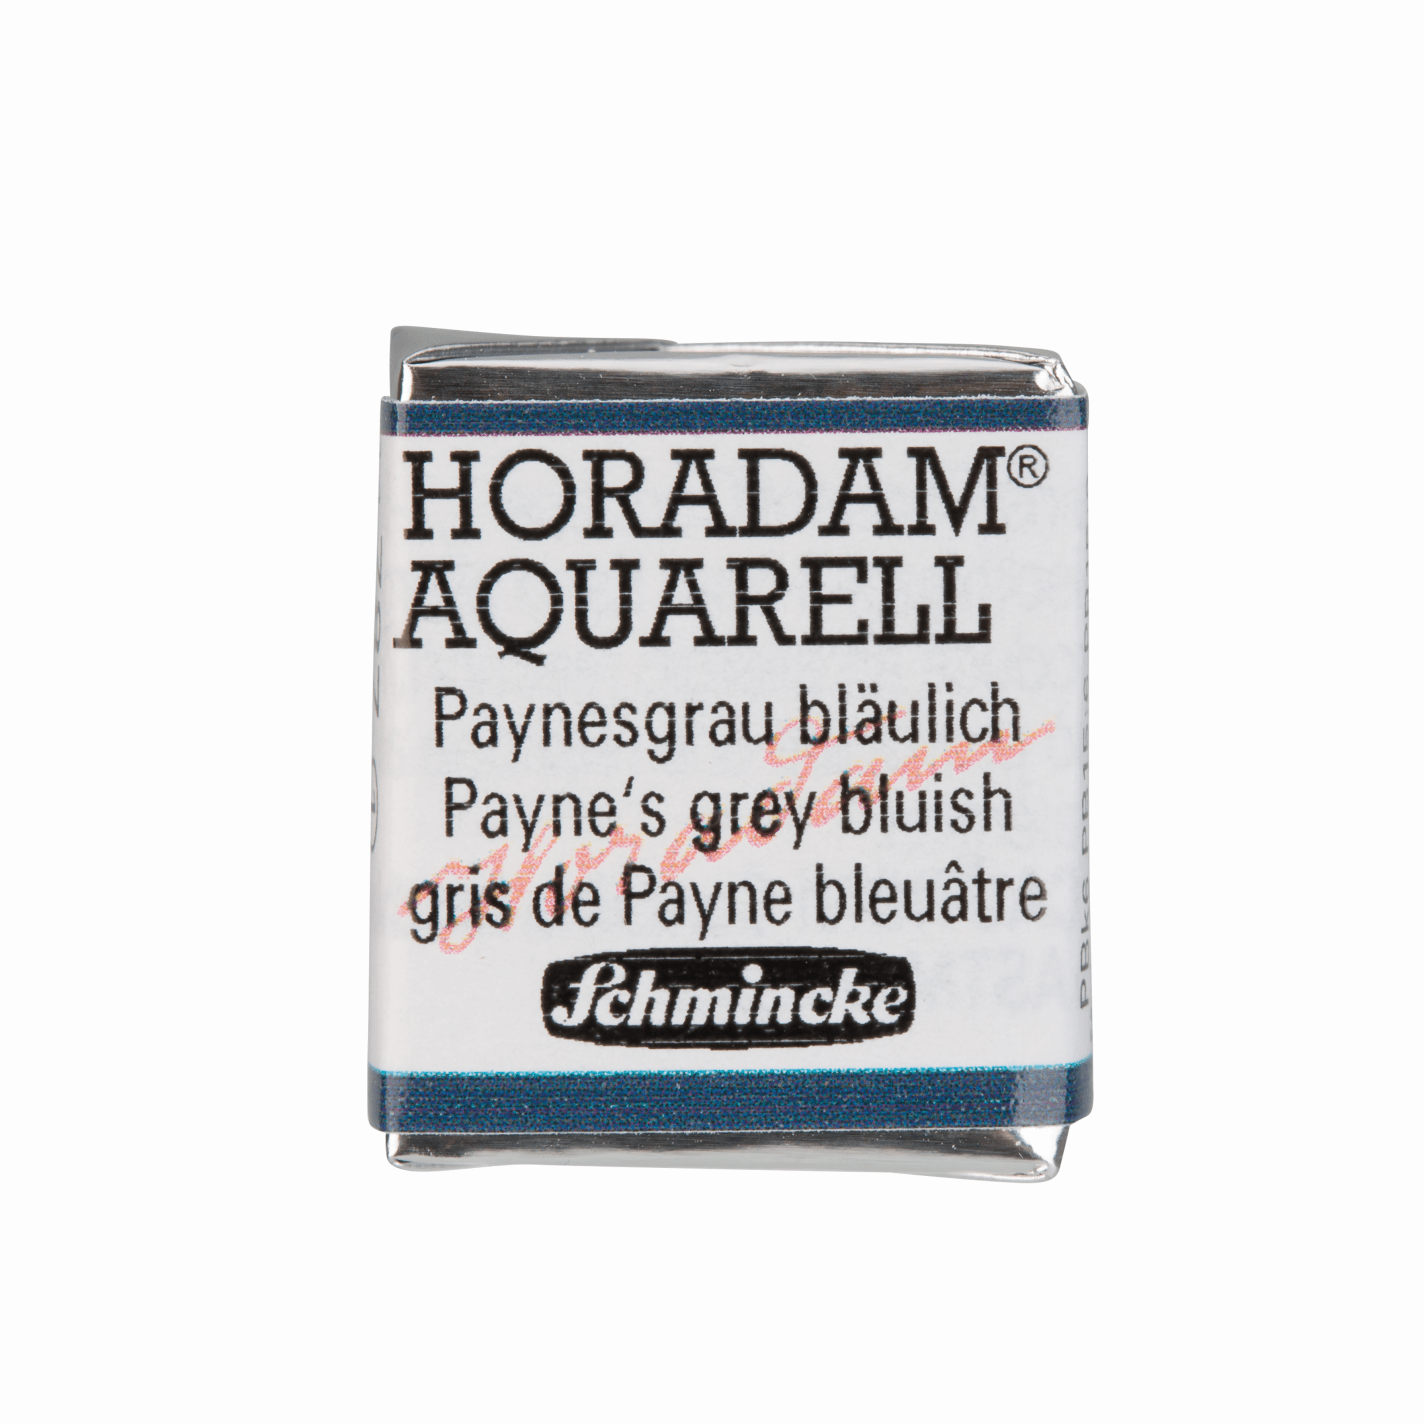 Schmincke Horadam Aquarell pans 1/2 pan Payne‘s Grey Bluish